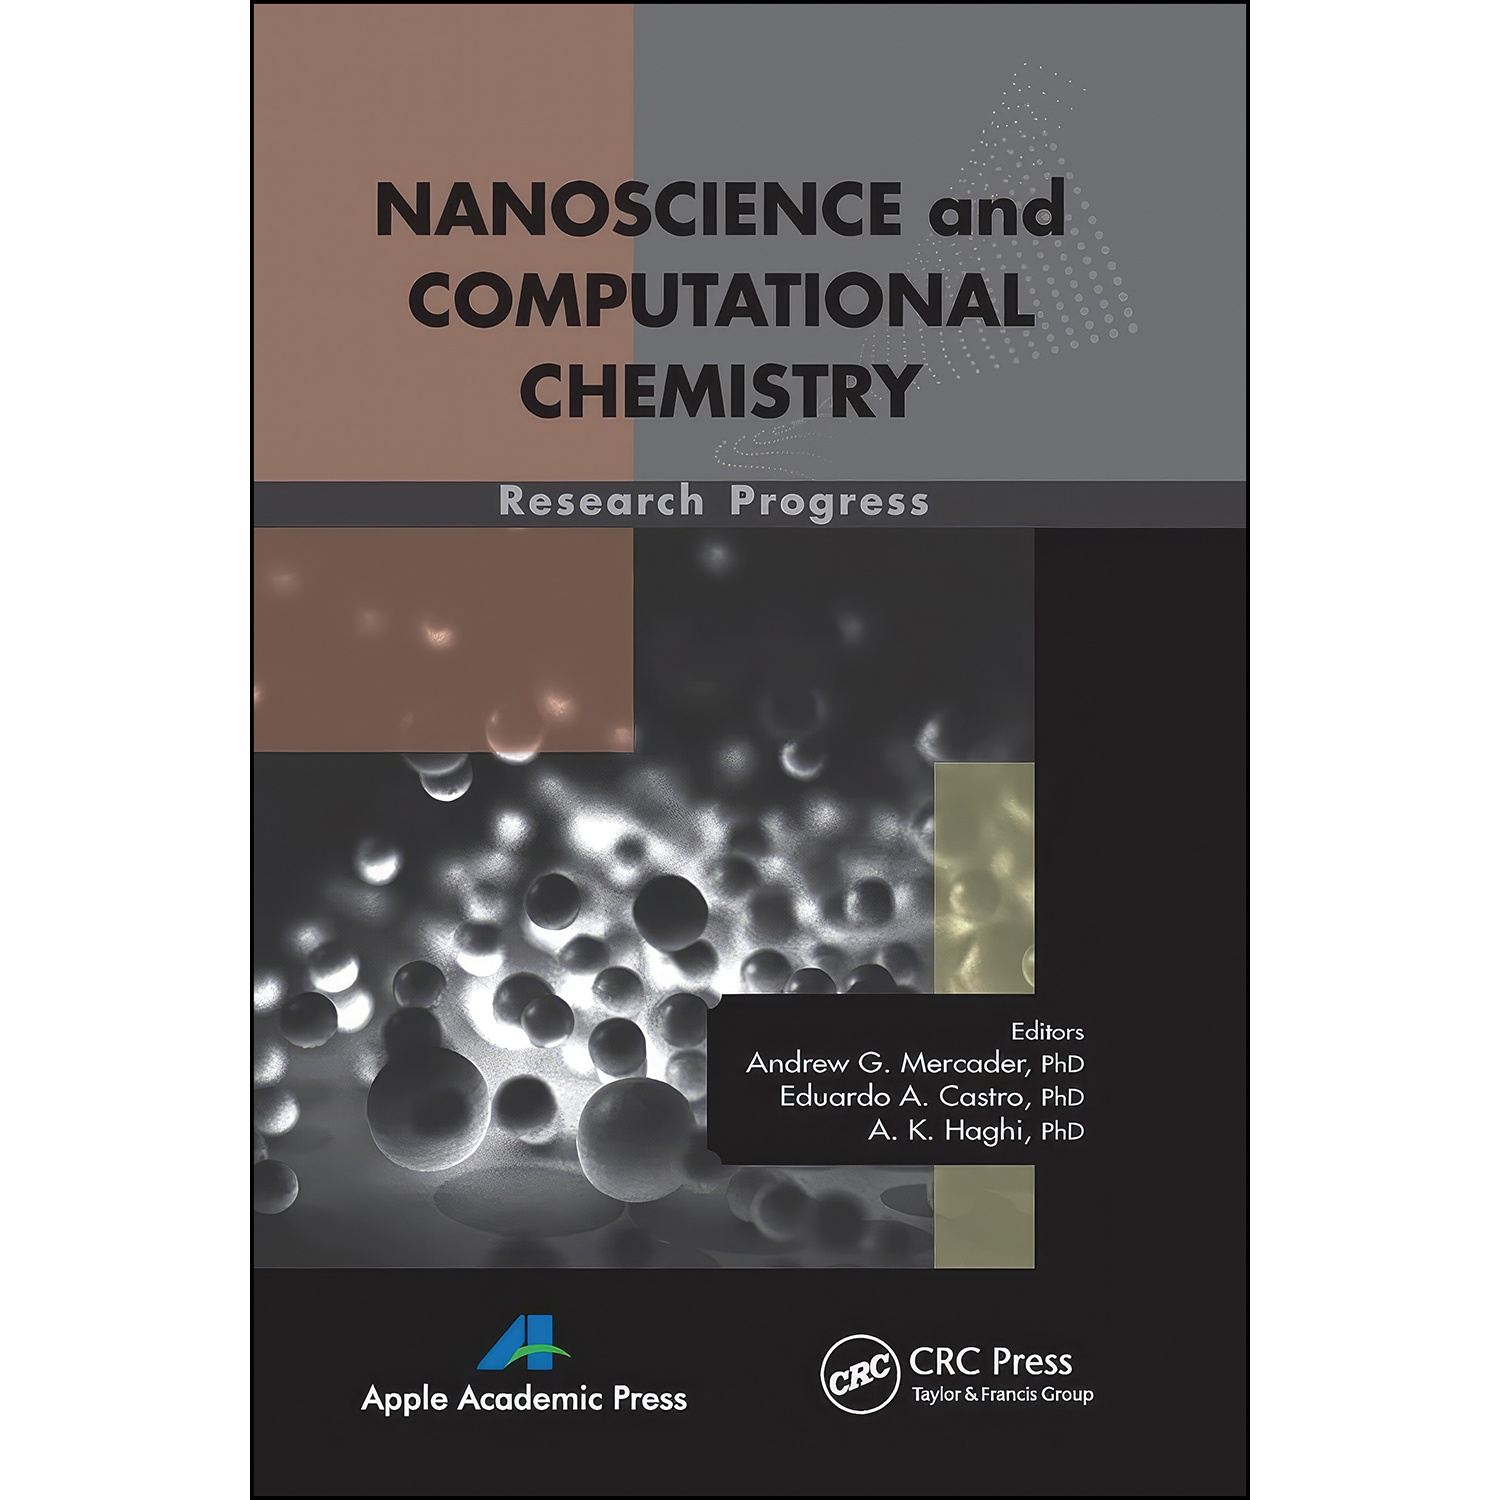 کتاب Nanoscience and Computational Chemistry اثر جمعي از نويسندگان انتشارات APPLE ACADEMIC